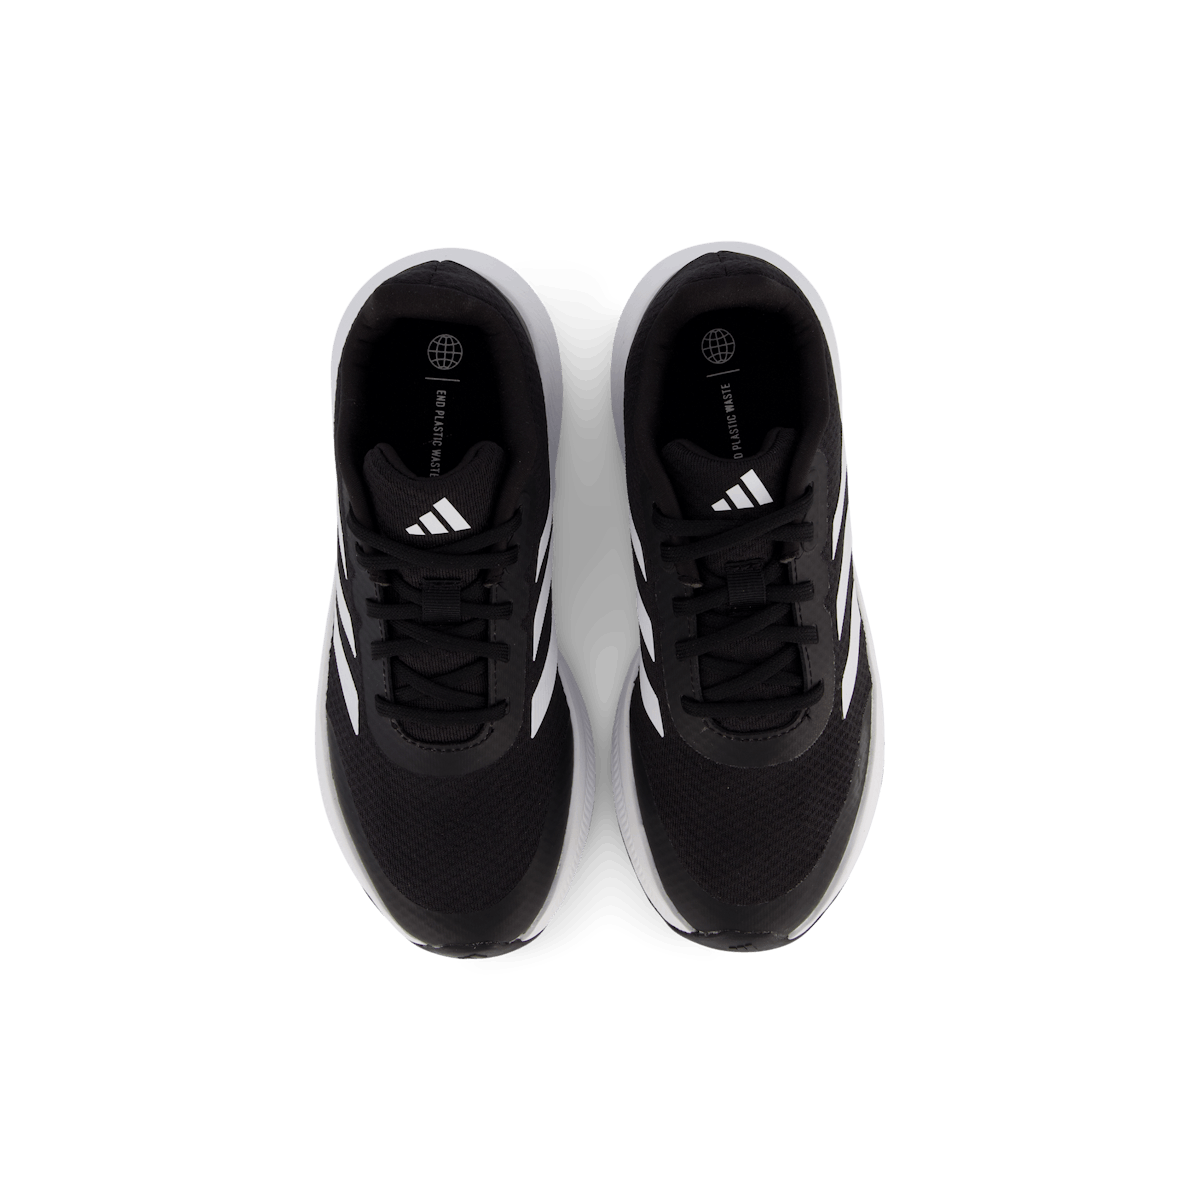 RunFalcon 3 Lace Shoes Core Black / Cloud White / Core Black